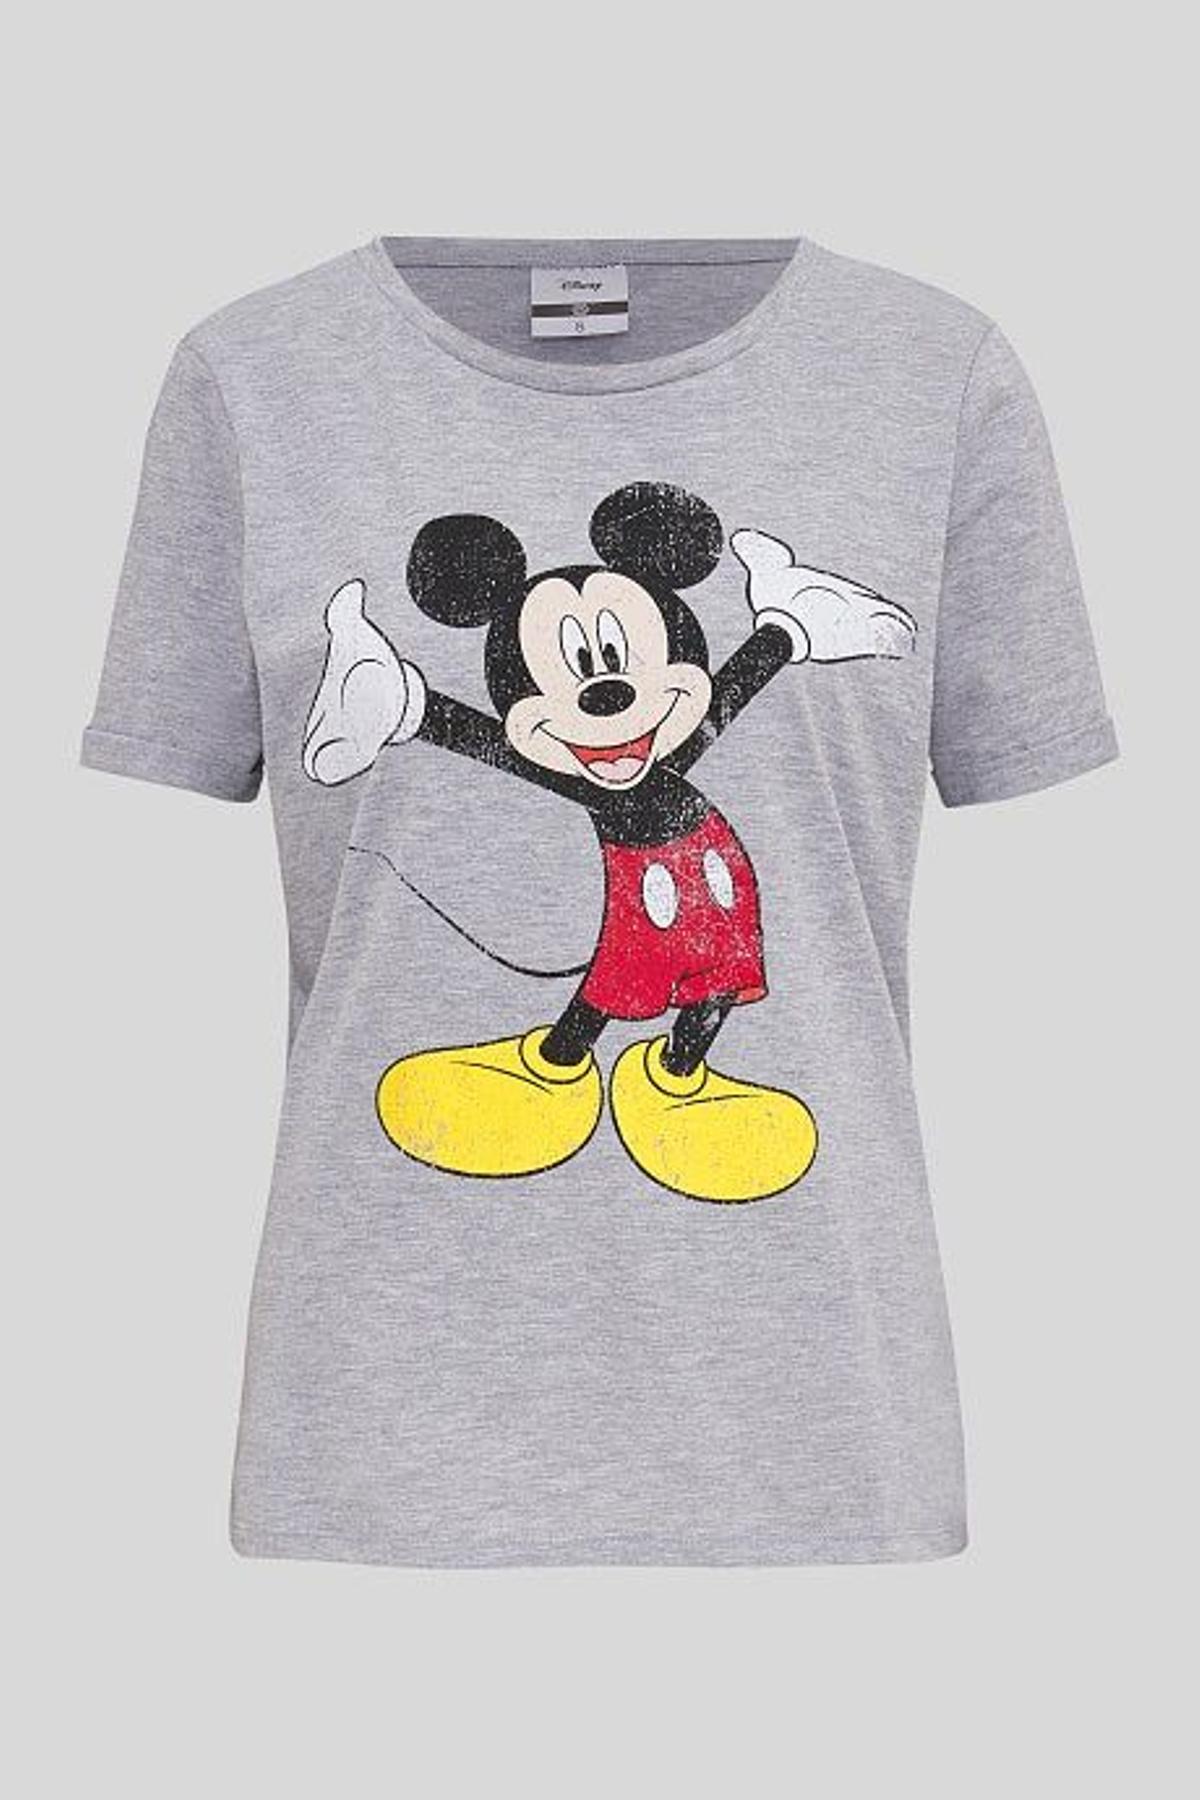 Camiseta de Mickey Mouse de C&amp;A. (Precio: 9, 90 euros)